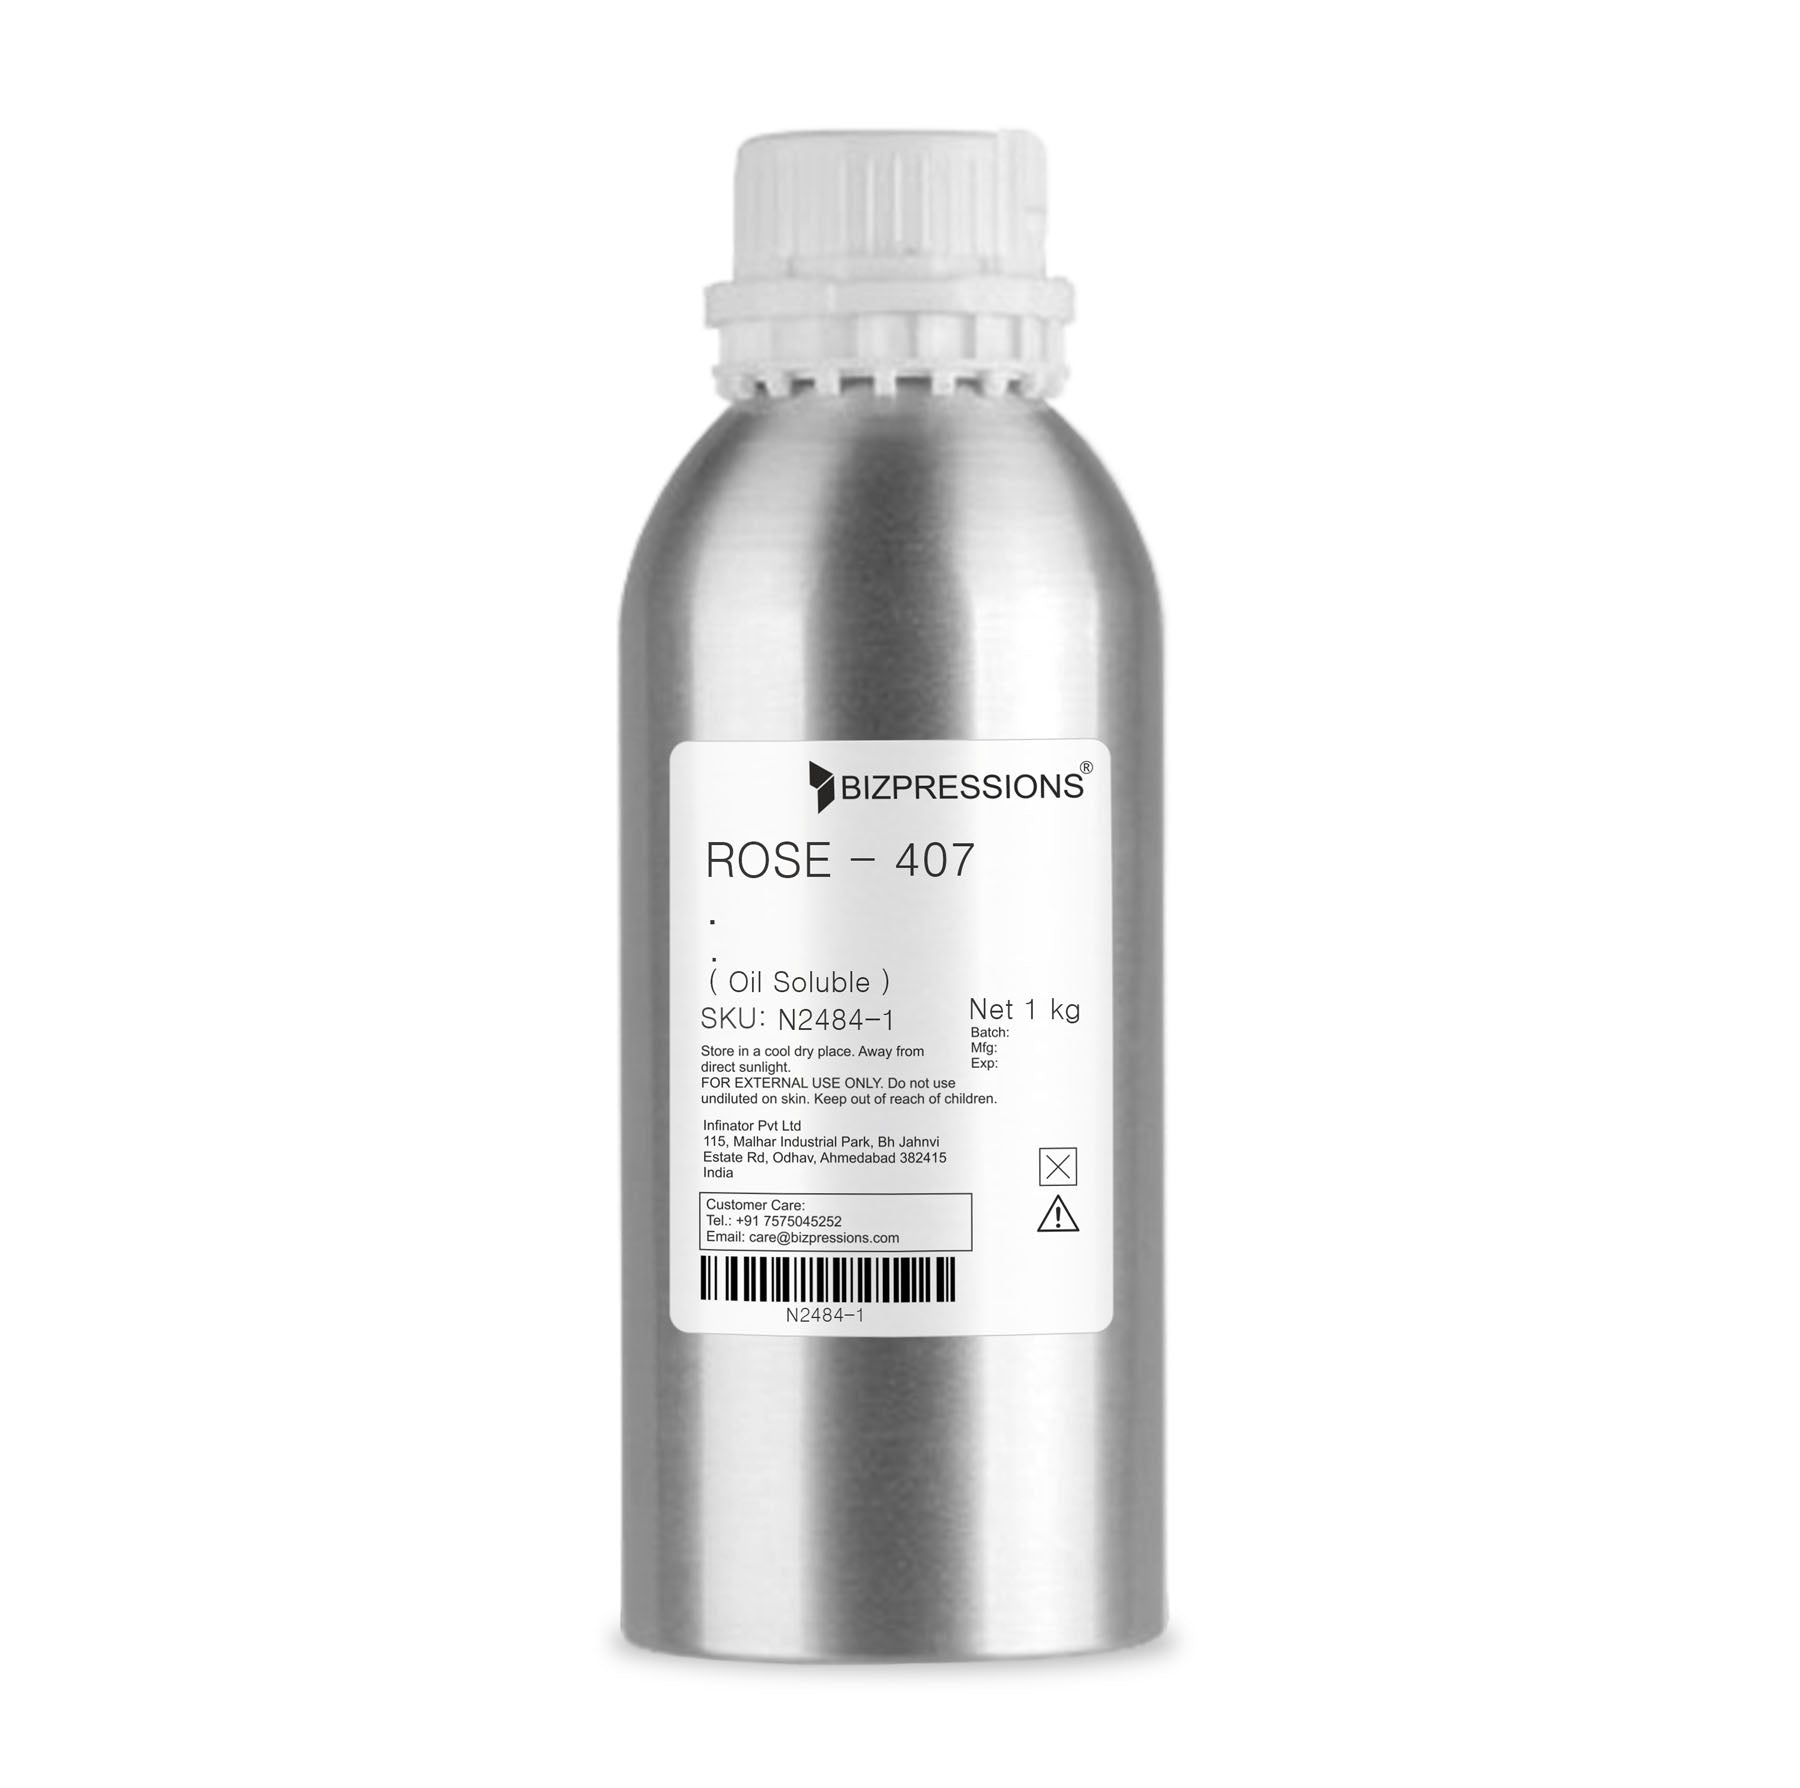 ROSE - 407 - Fragrance ( Oil Soluble ) - 1 kg